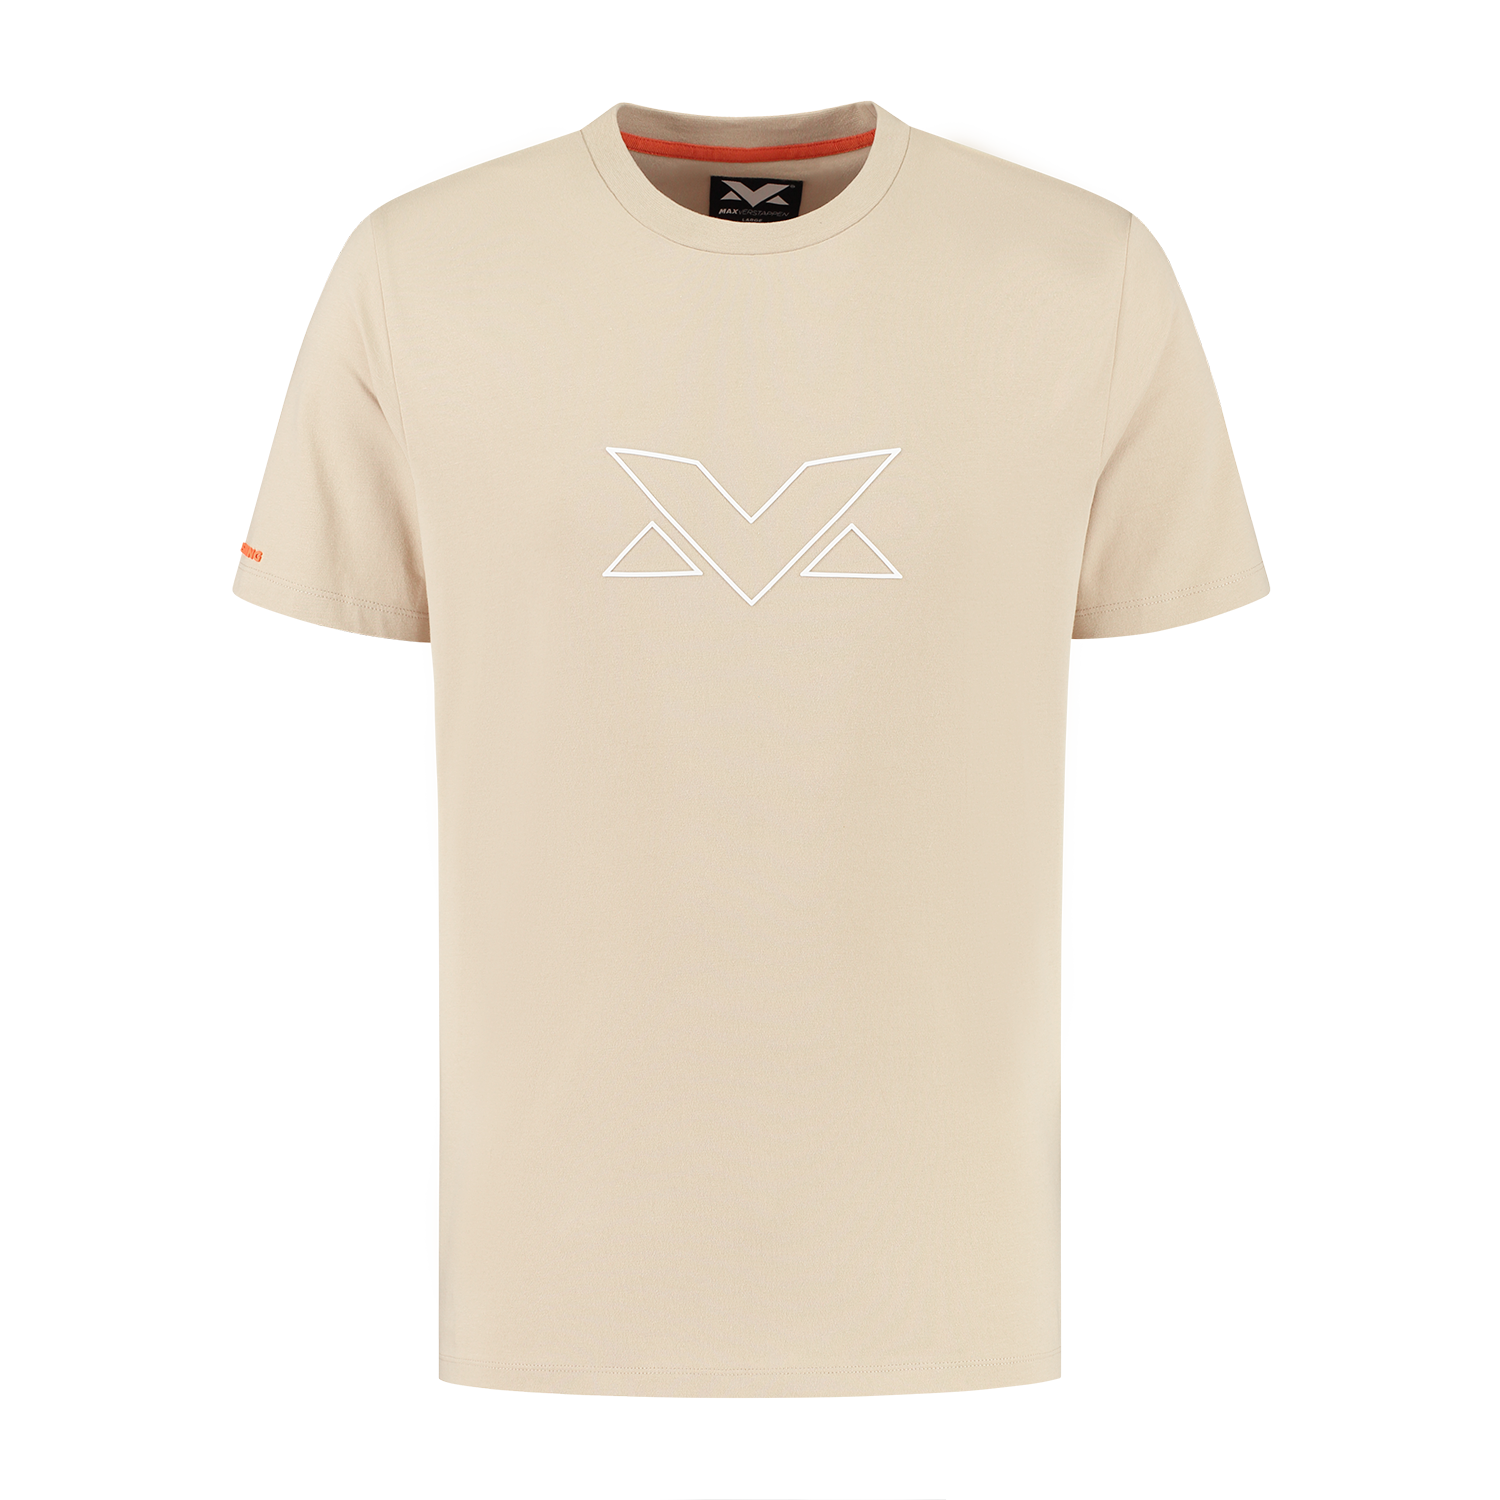 Heren - MV Logo T-shirt - Camel - S - Max Verstappen